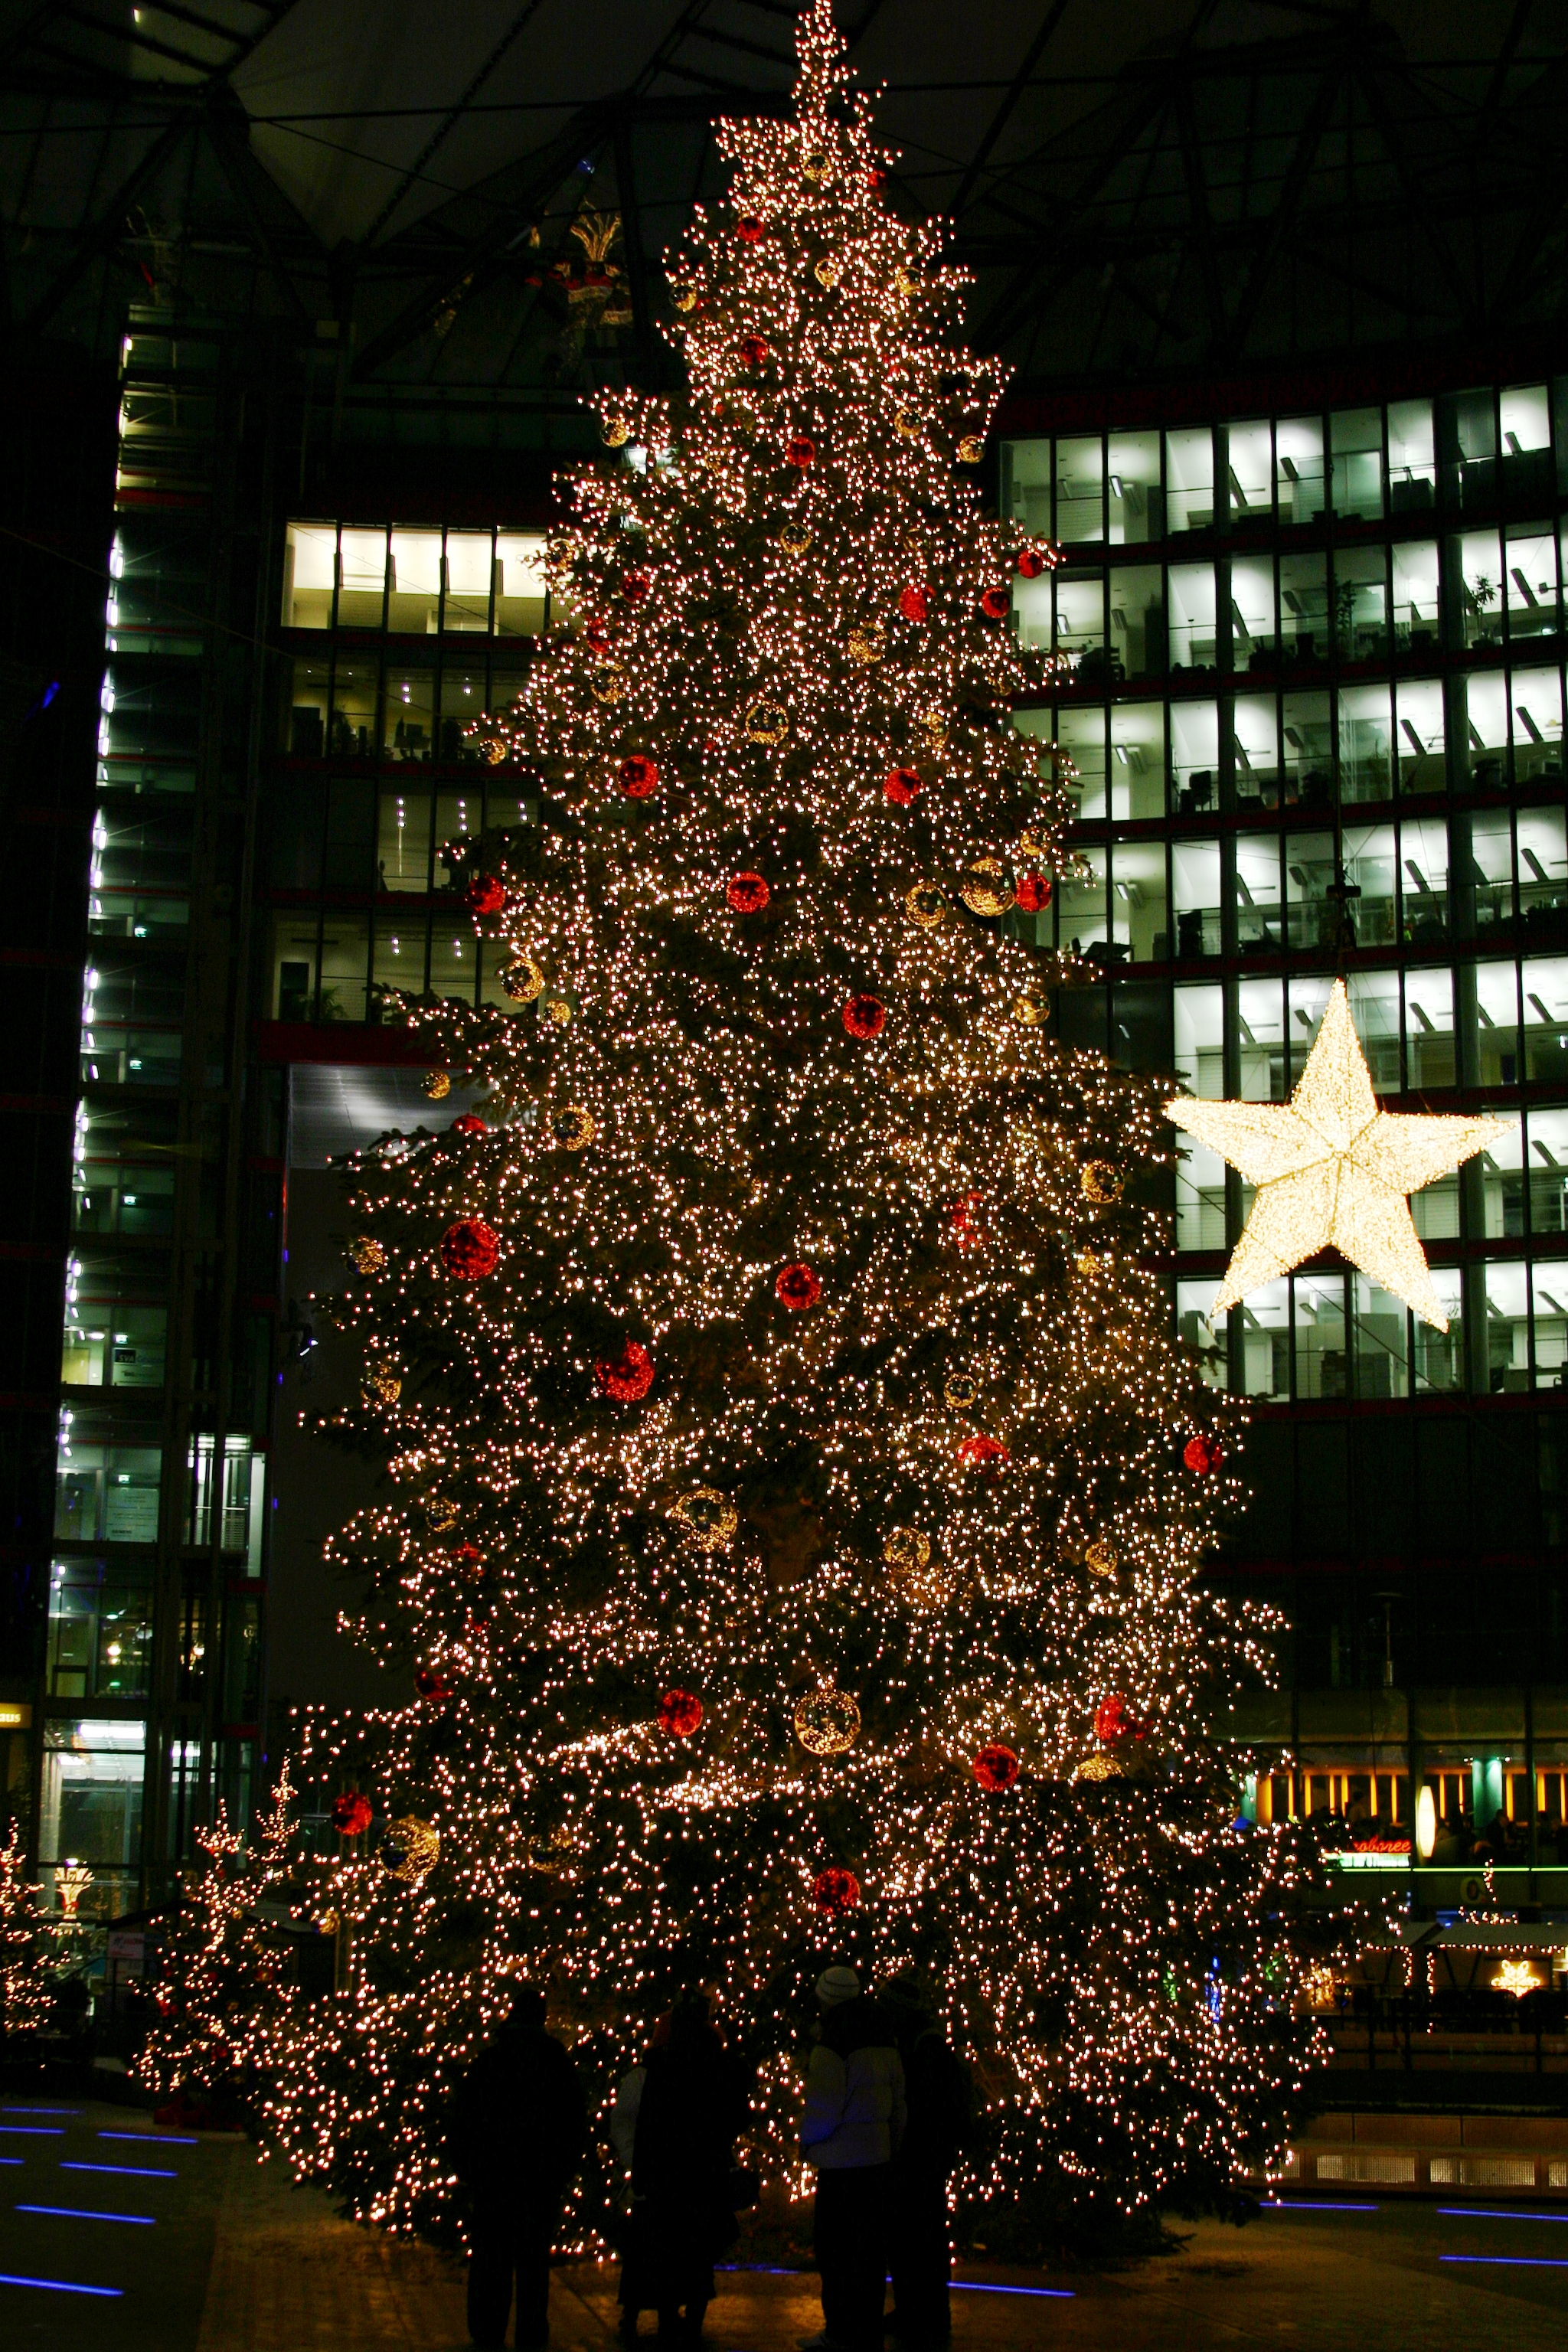 Auf dem Bild ist ein Weihnachtsbaum zu sehen